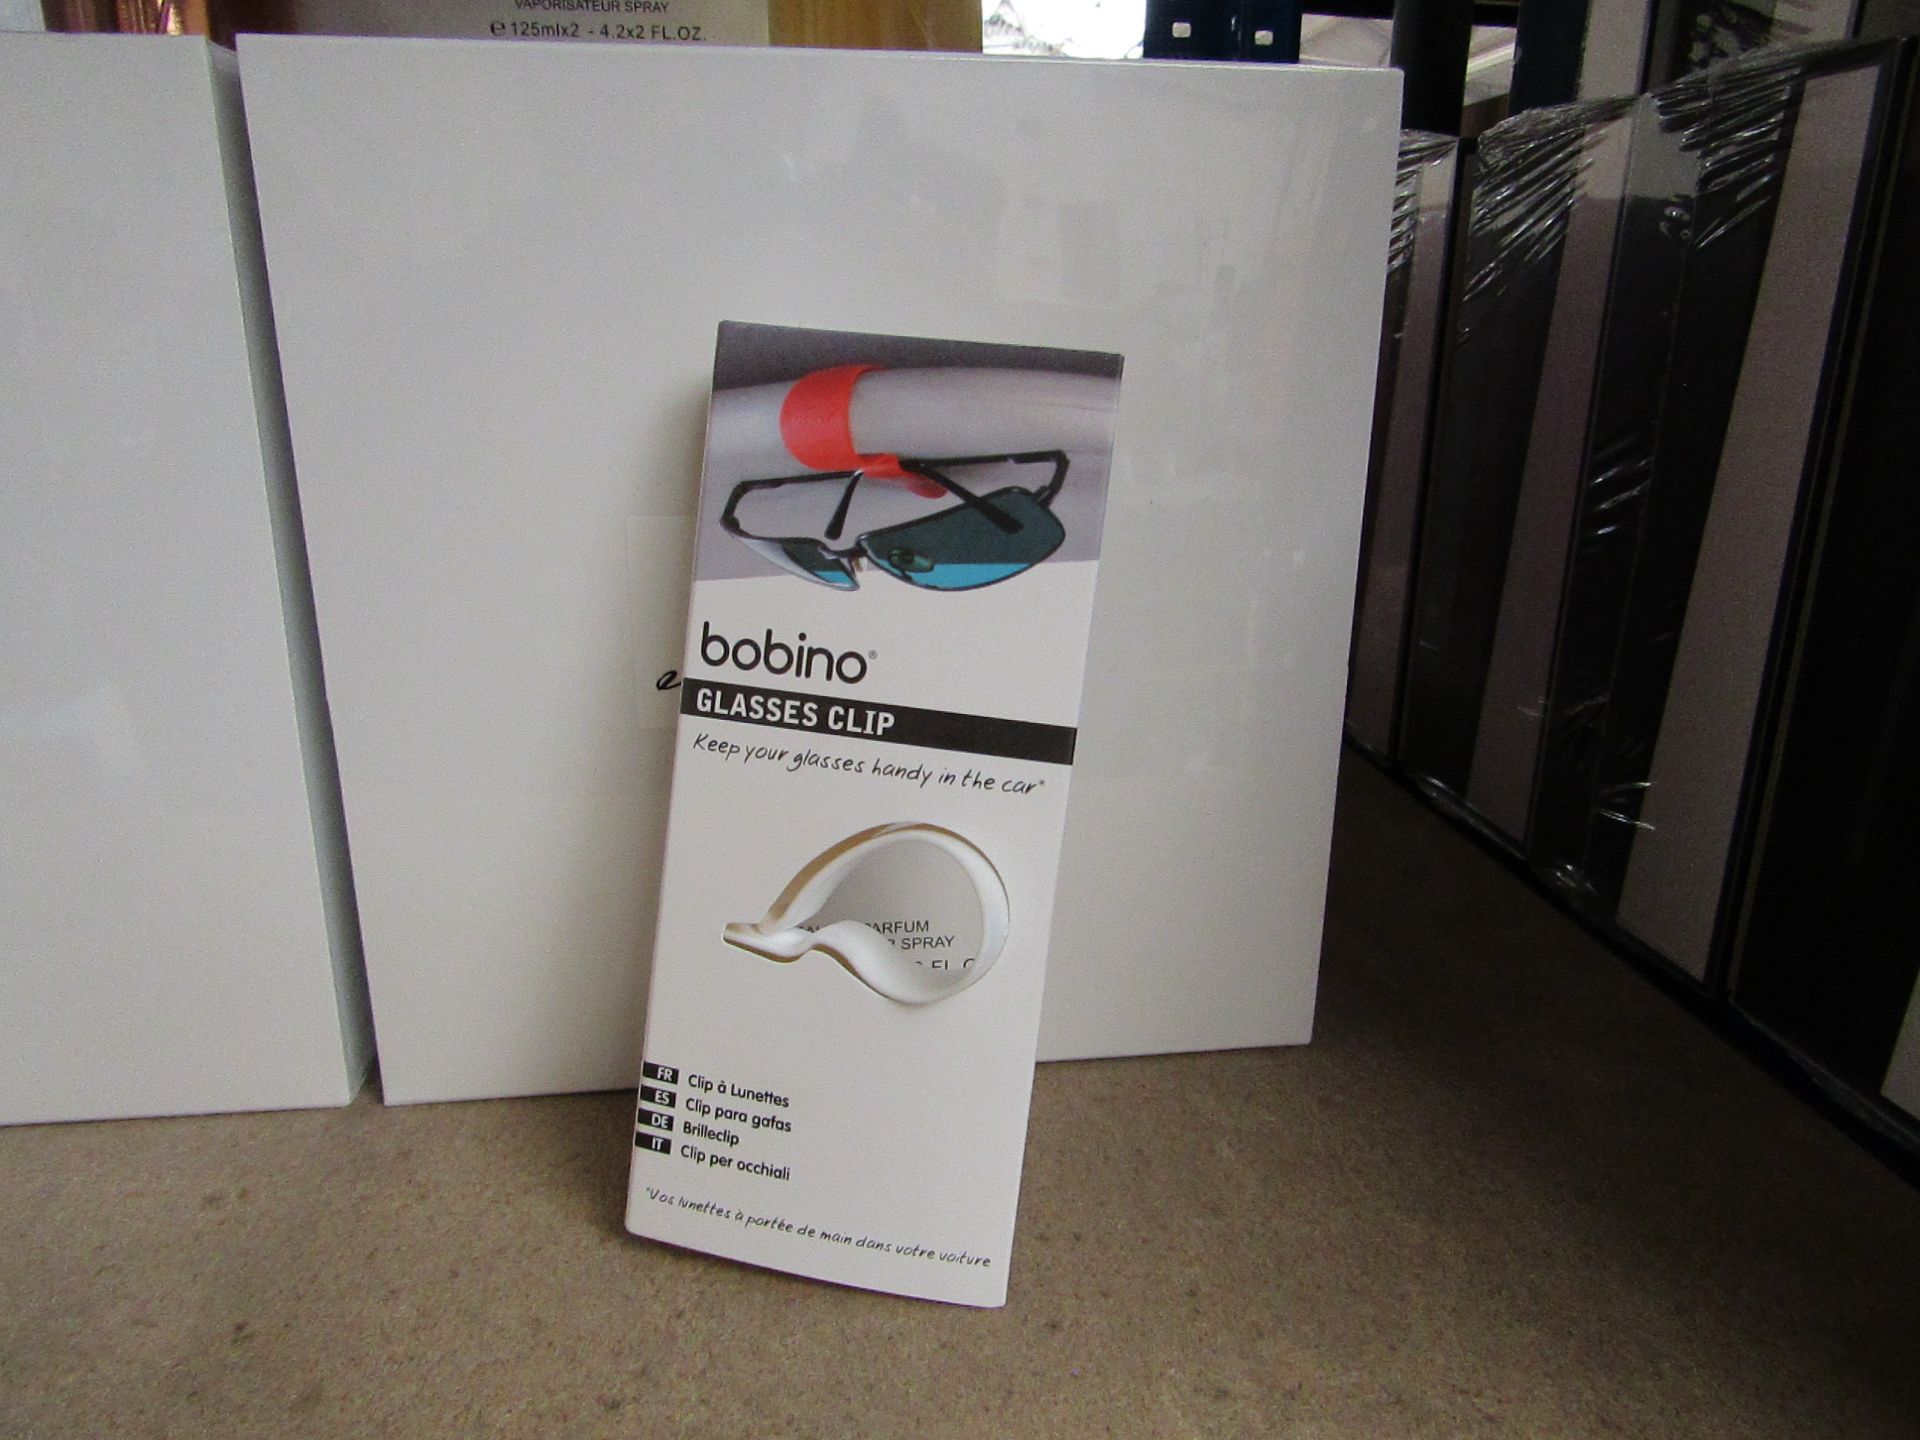 10x Bobino - White Glasses Clip - New & Packaged.